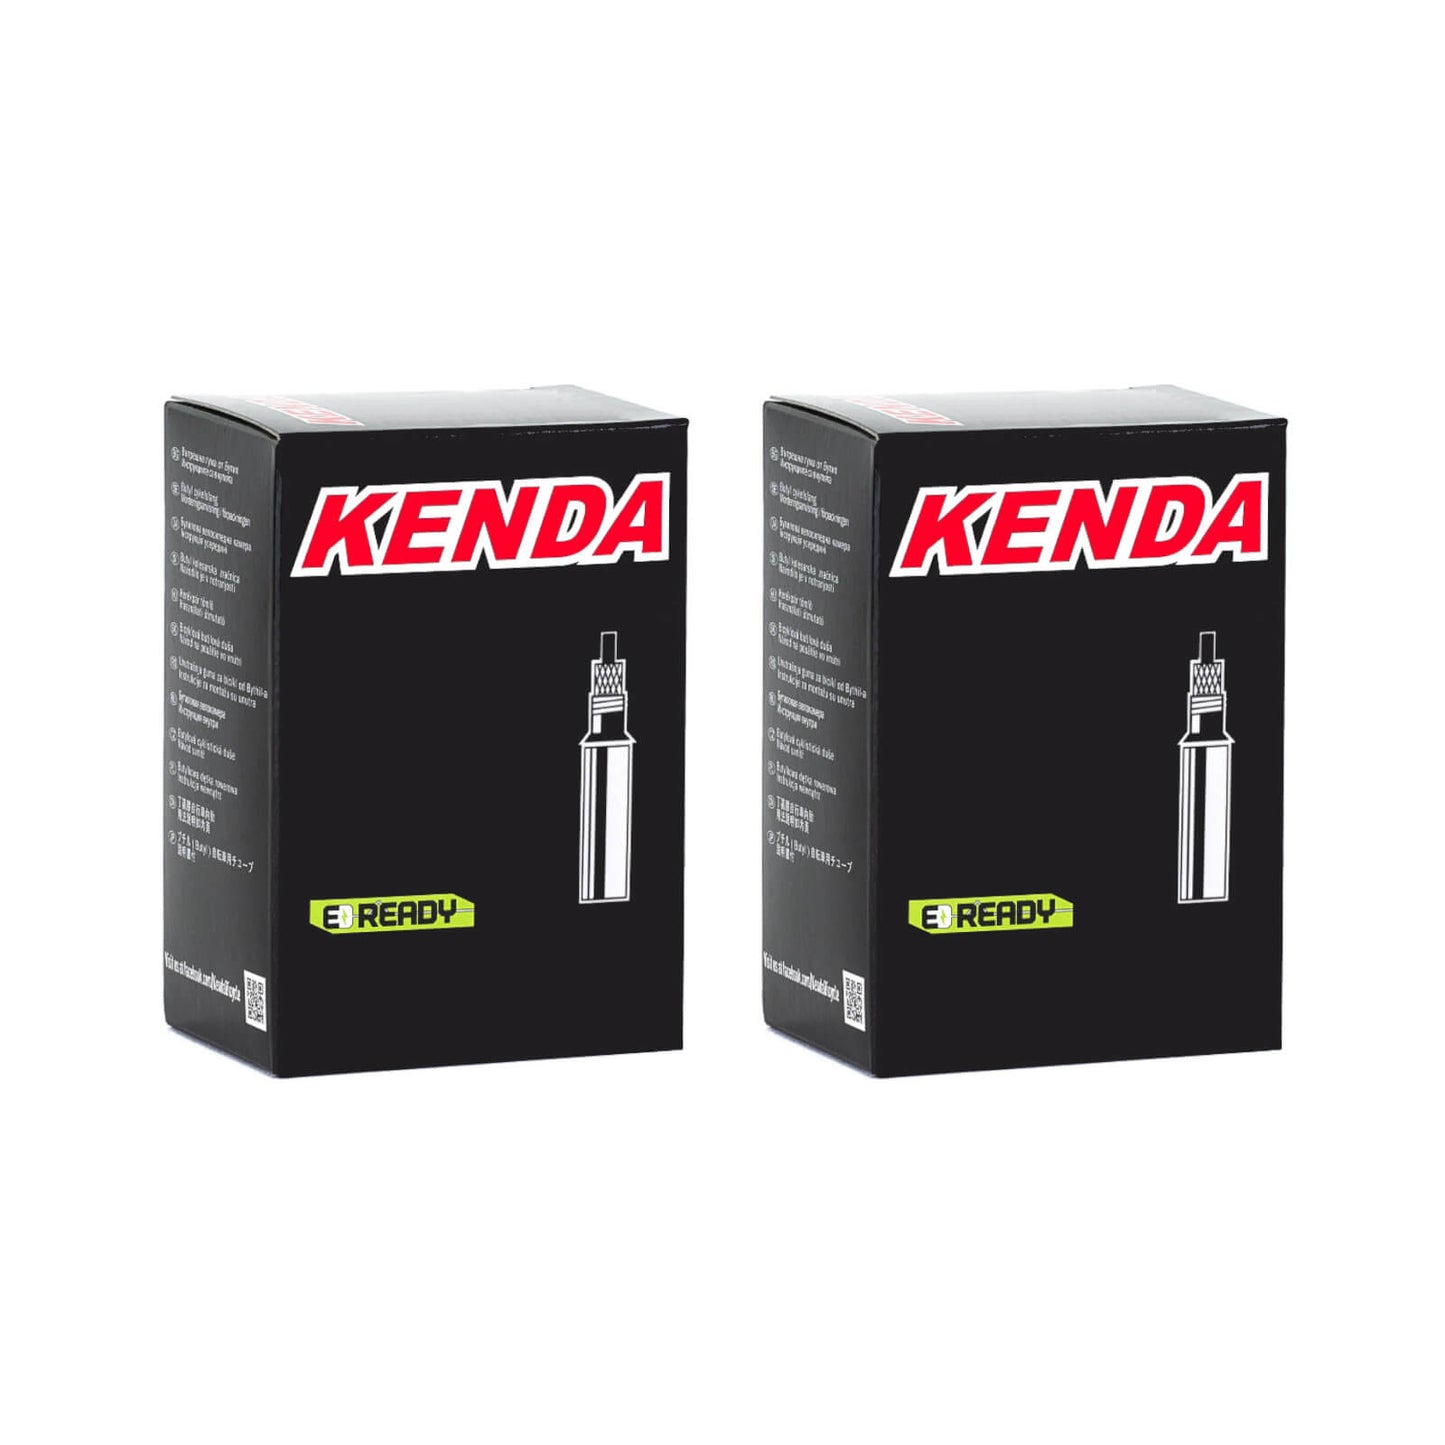 Kenda 700x20-28c 700c Presta Valve Bike Inner Tube Pack of 2